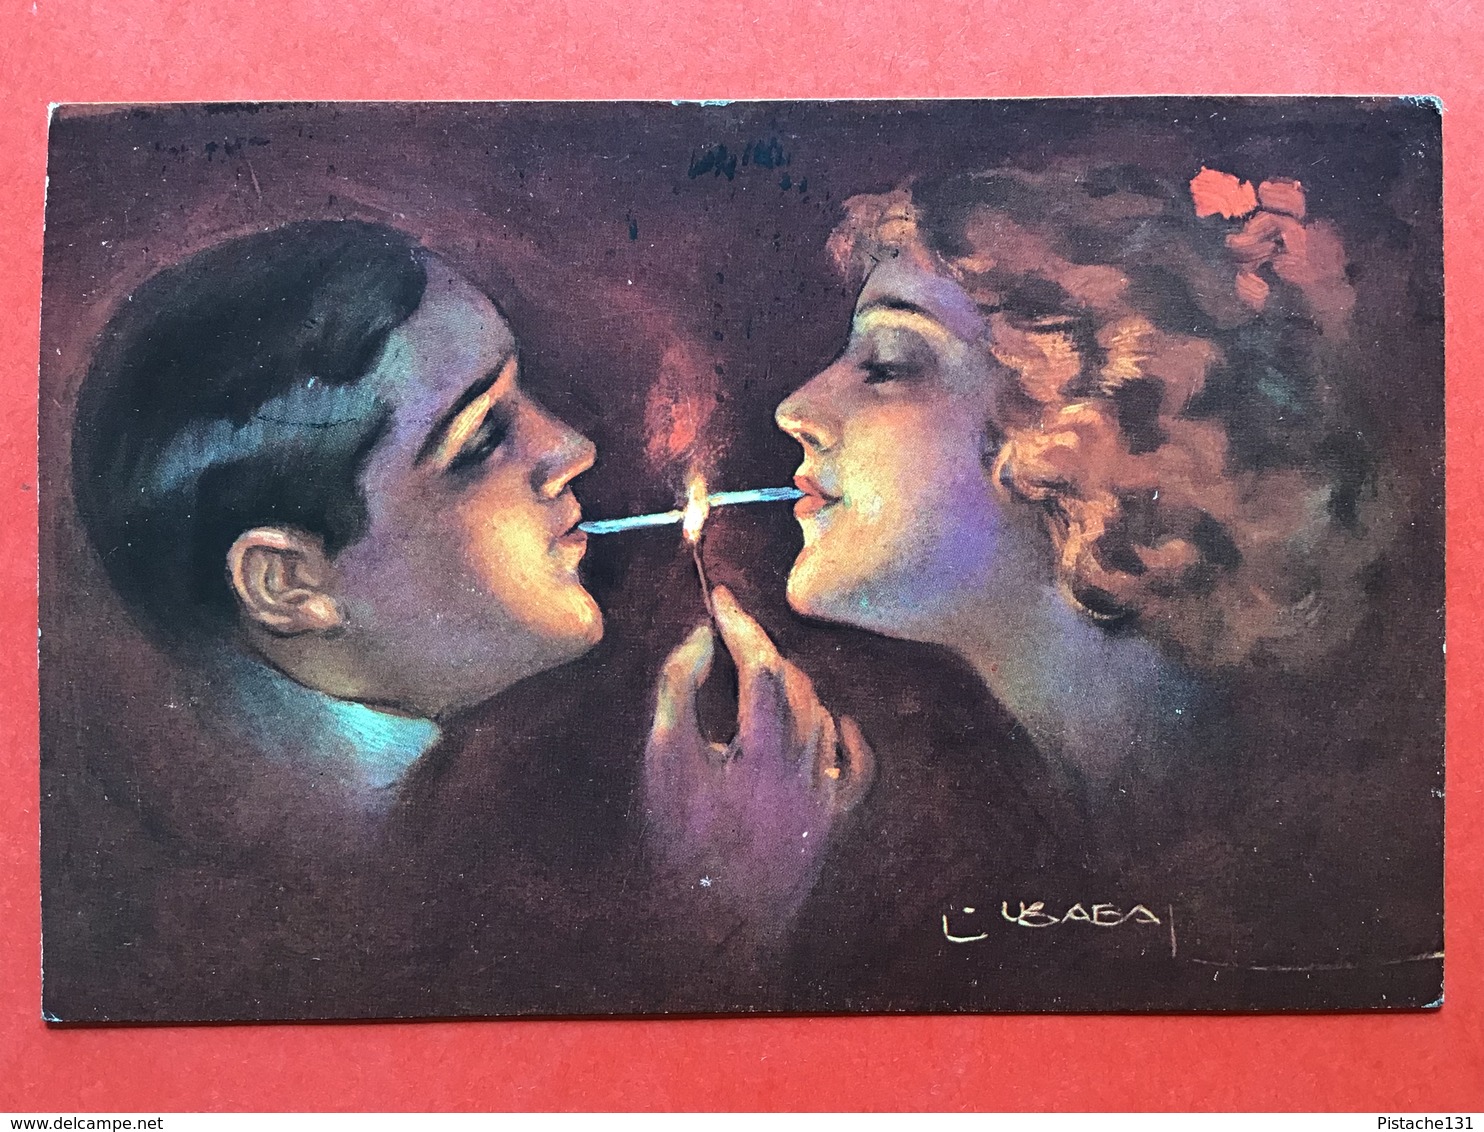 1915 - Illustrateur USABAL - COUPLE FUME CIGARETTE ENSEMBLE - KOPPEL ROOKT SAMEN EEN SIGARET - Usabal